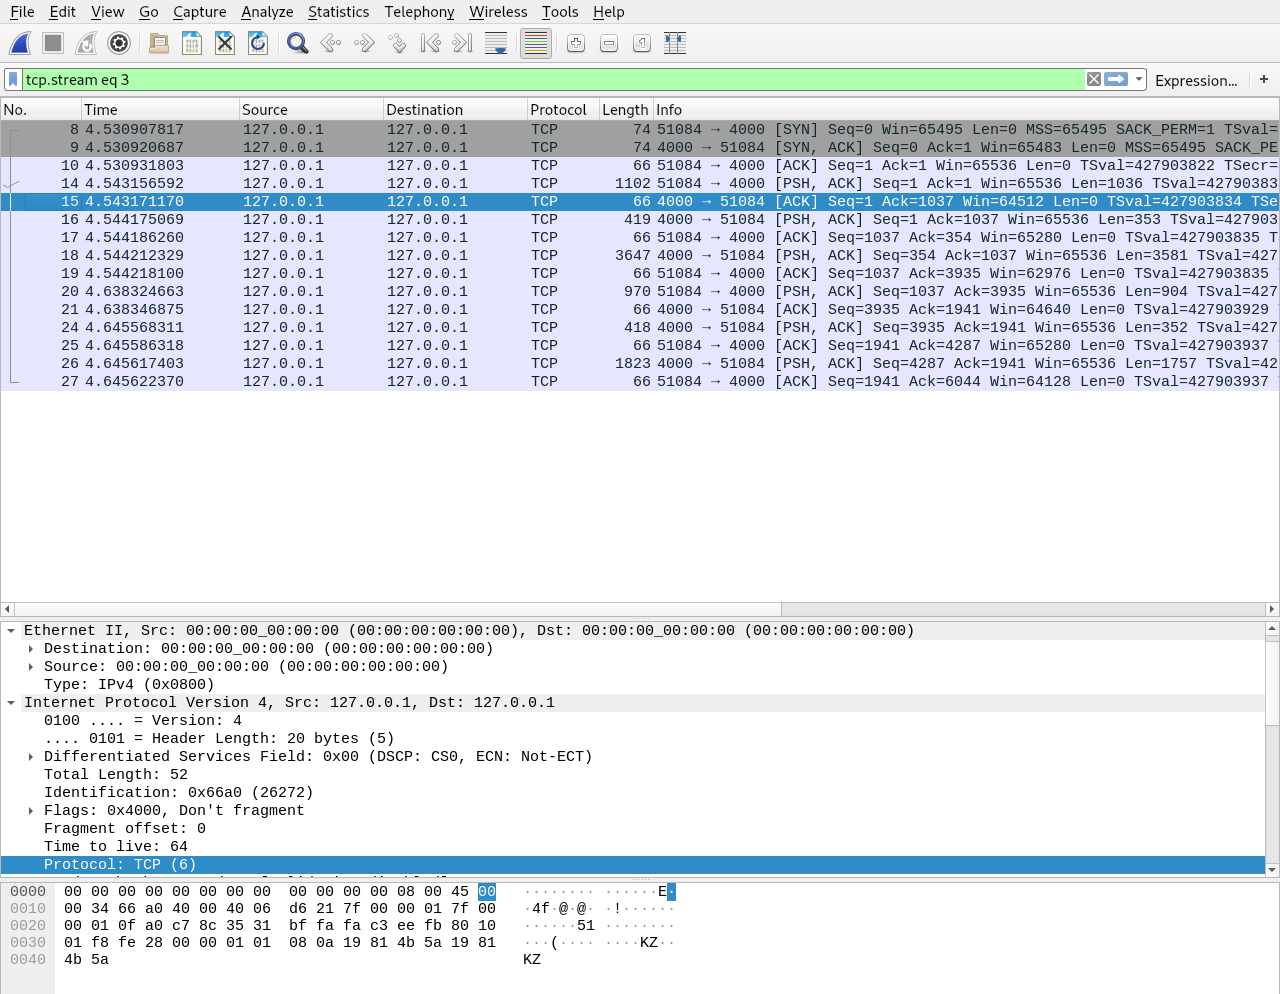 A screenshot of Wireshark showing an HTTP request